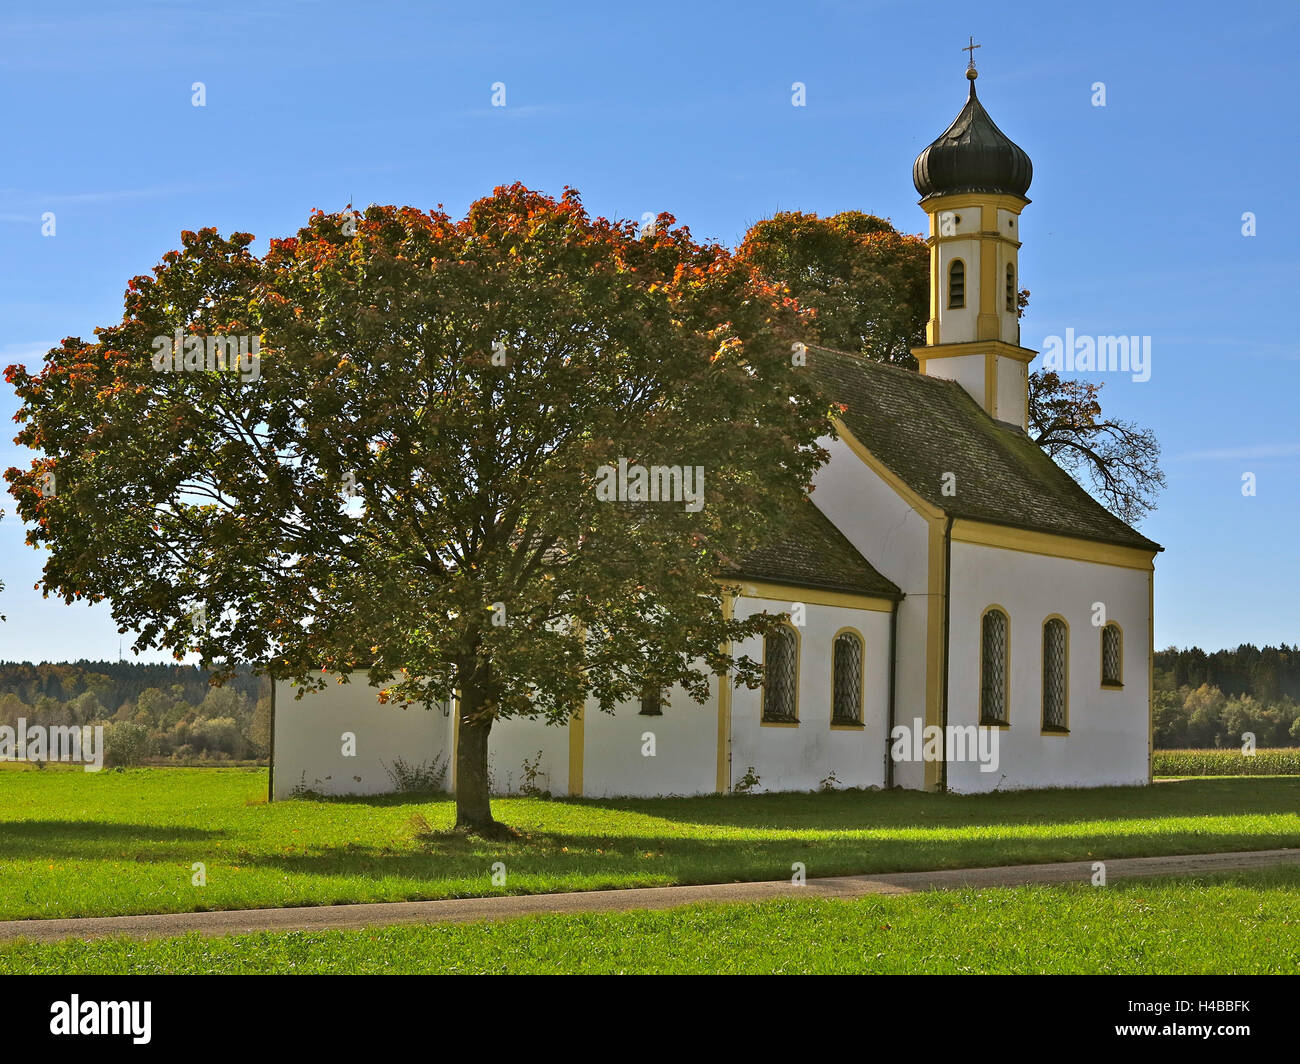 Germany, Upper Bavaria, Raisting Stock Photo